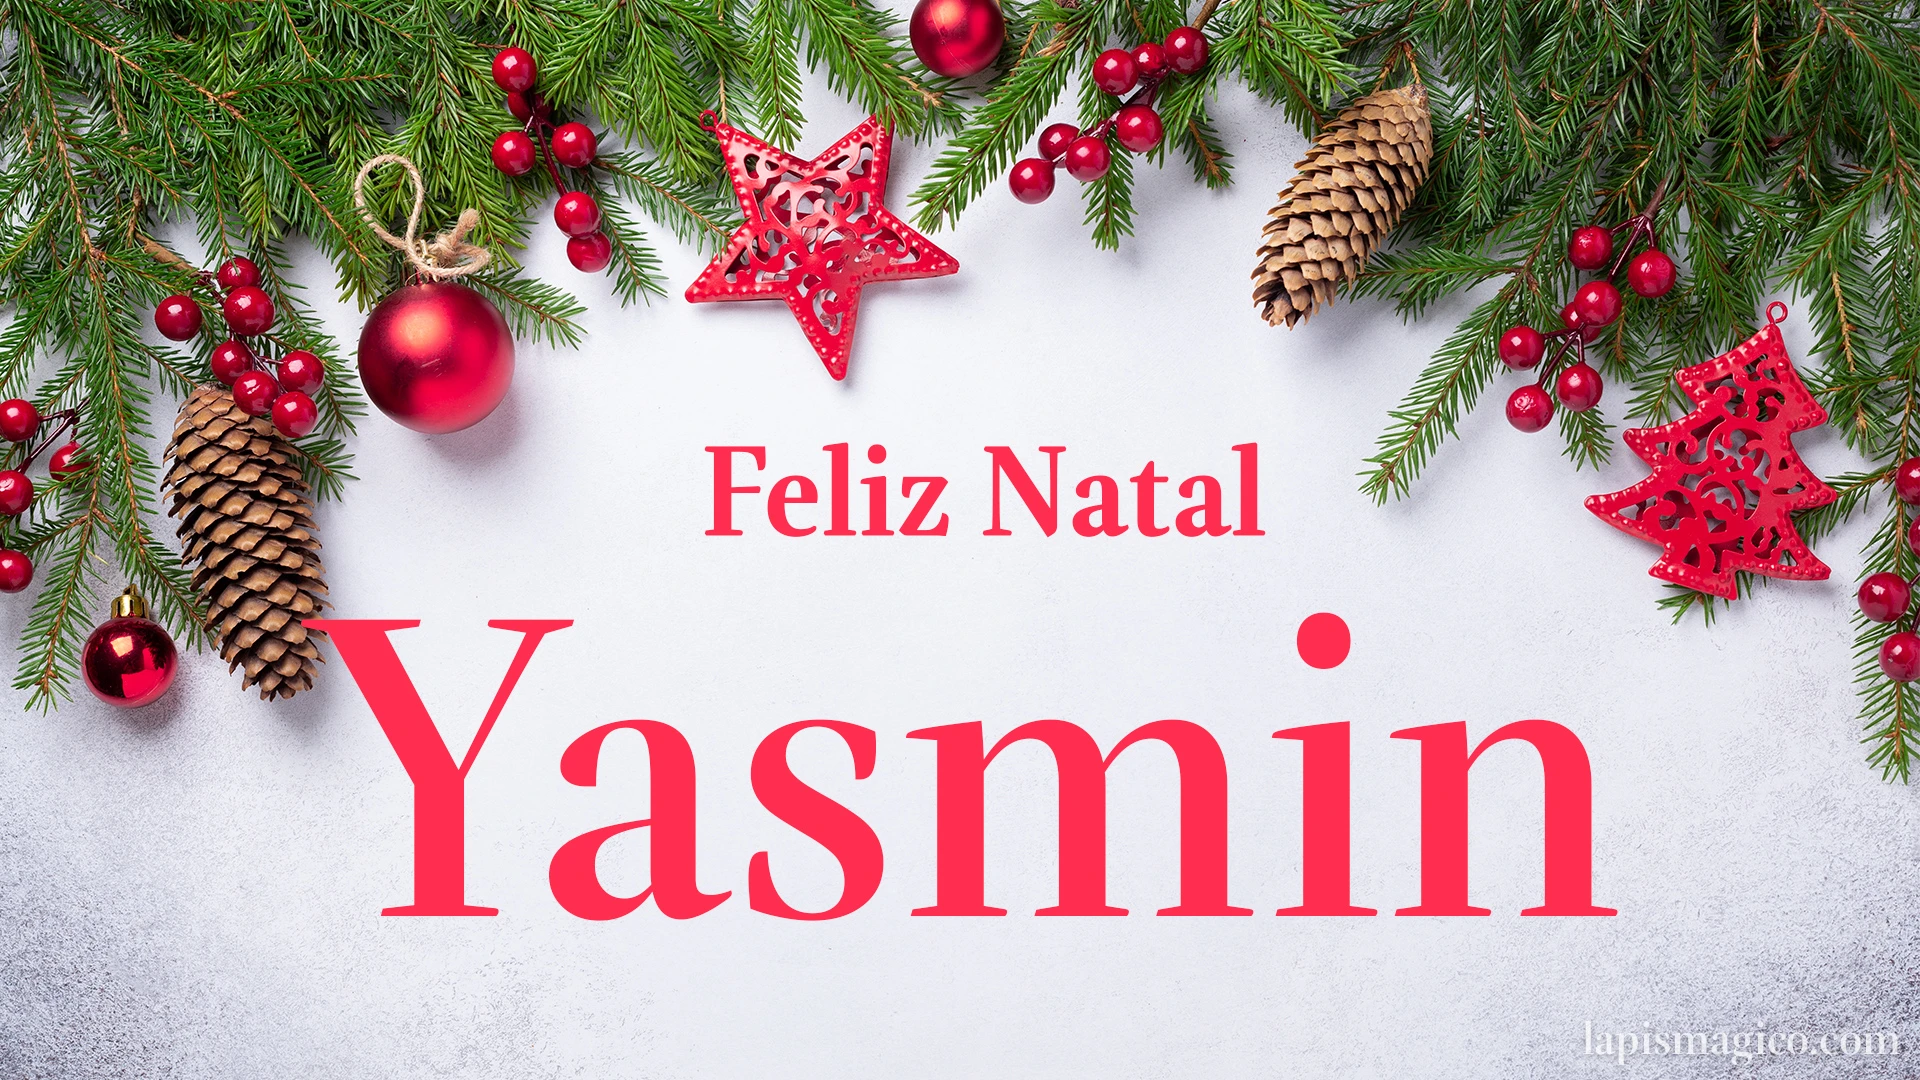 Oh Yasmin, cinco postais de Feliz Natal Postal com o teu nome